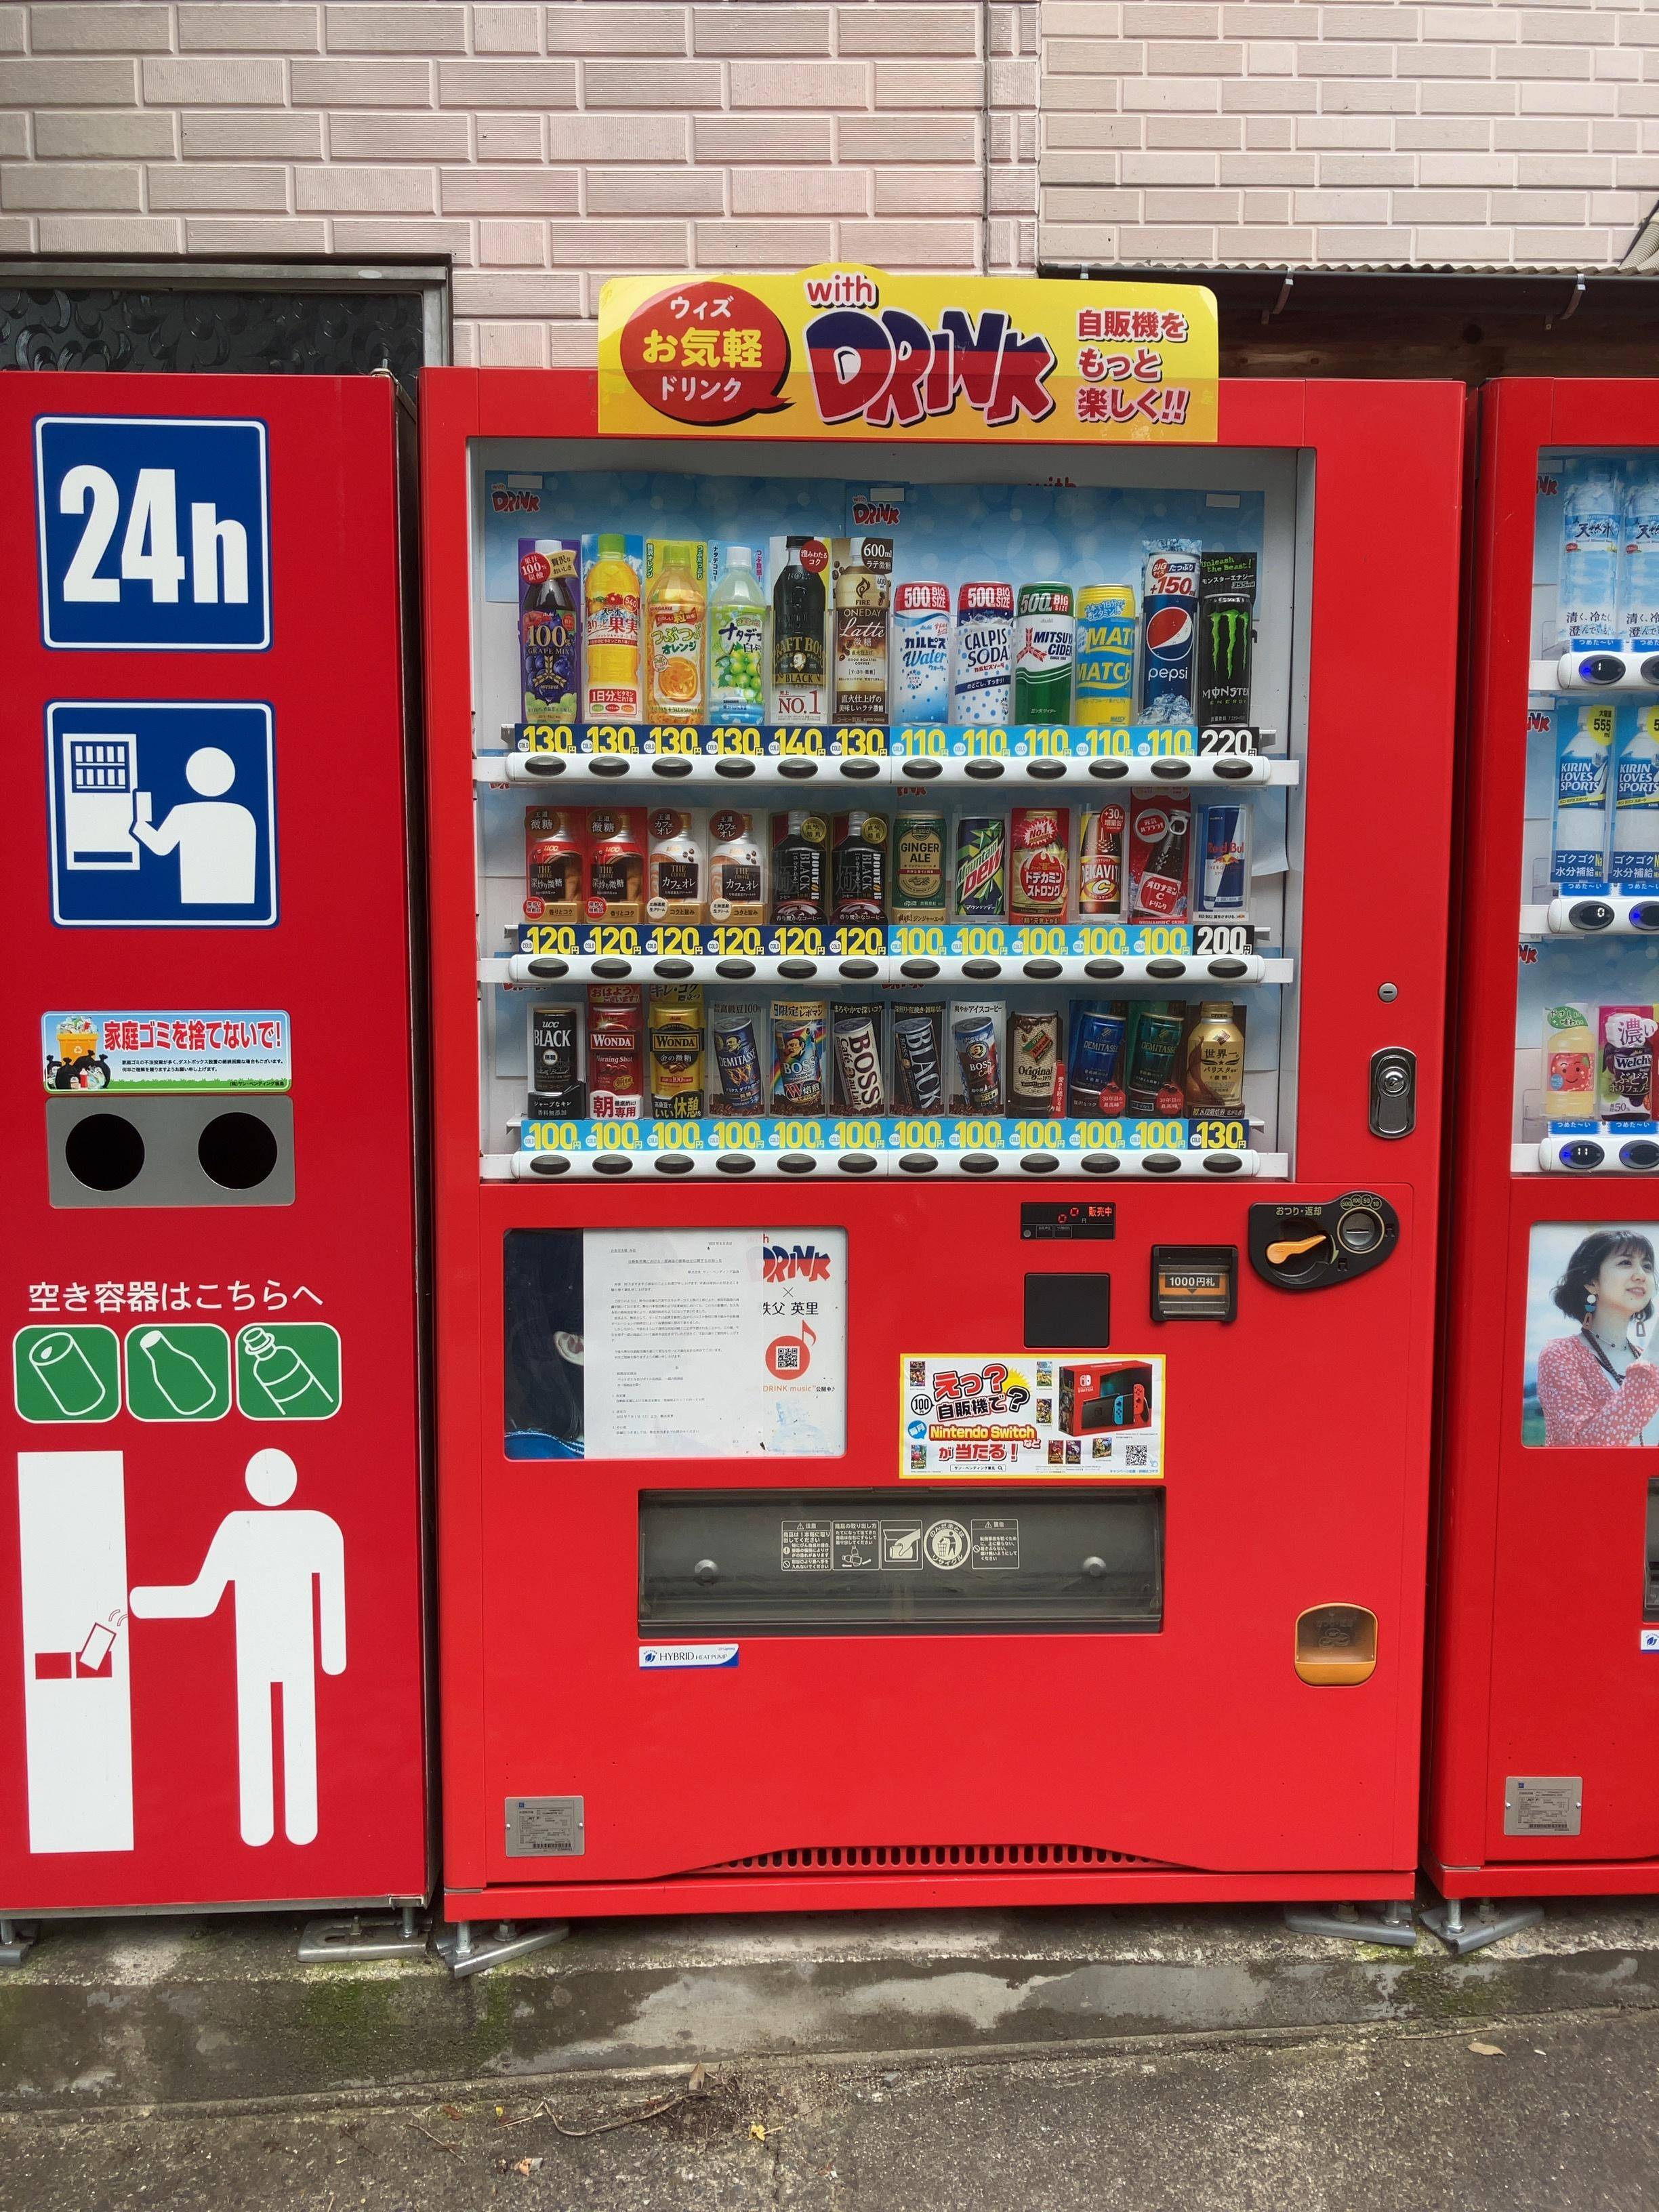 【悲報】若者「自販機でジュースは高くて買えない」→日本から自販機が物凄い勢いで減少中wwwwwwwwwwwwwwwwww  [802034645]\n_1